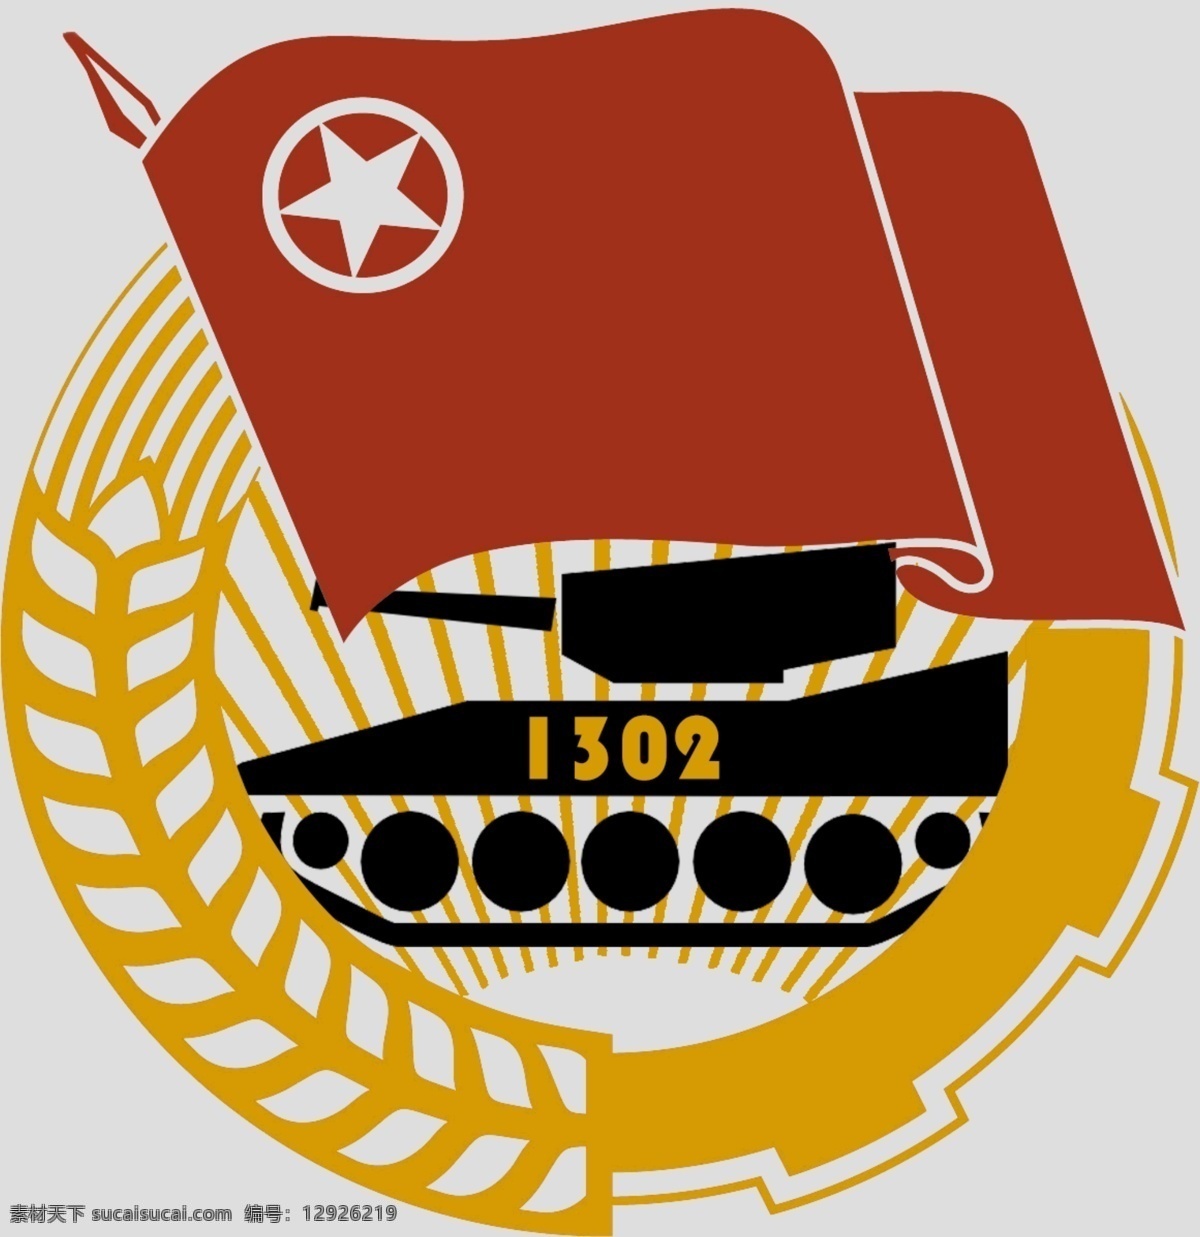 团支部 logo 车辆 团徽 红色